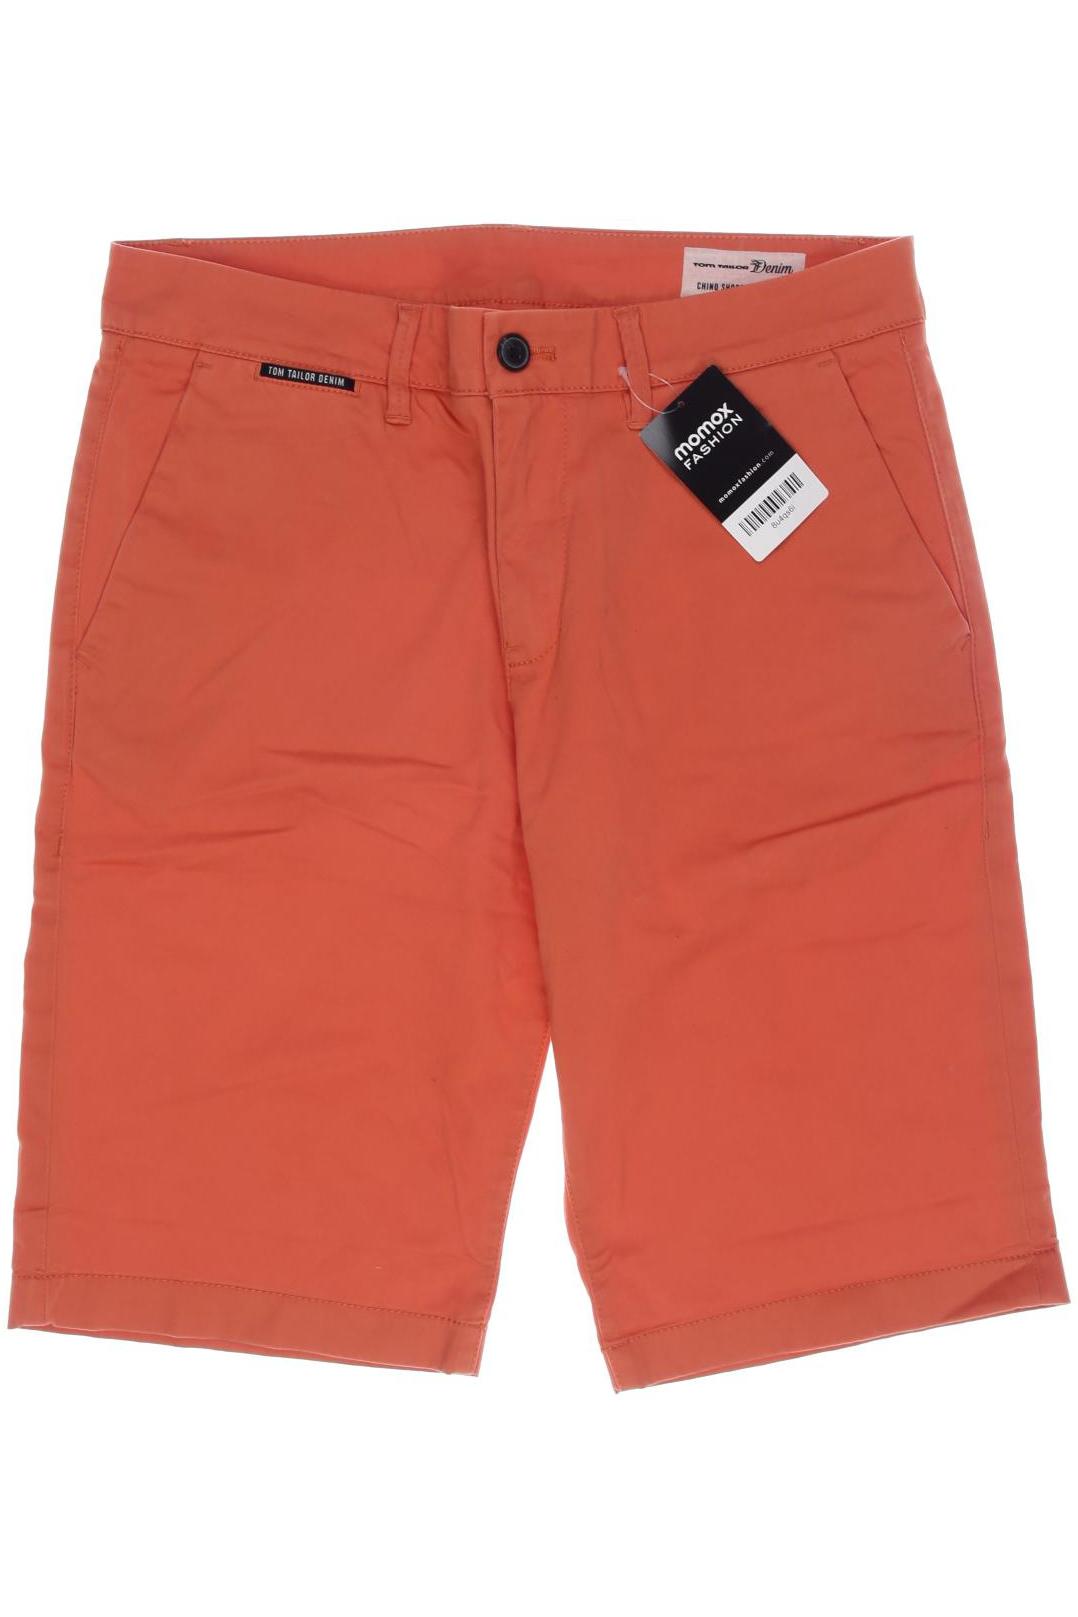 TOM TAILOR Denim Herren Shorts, orange von Tom Tailor Denim